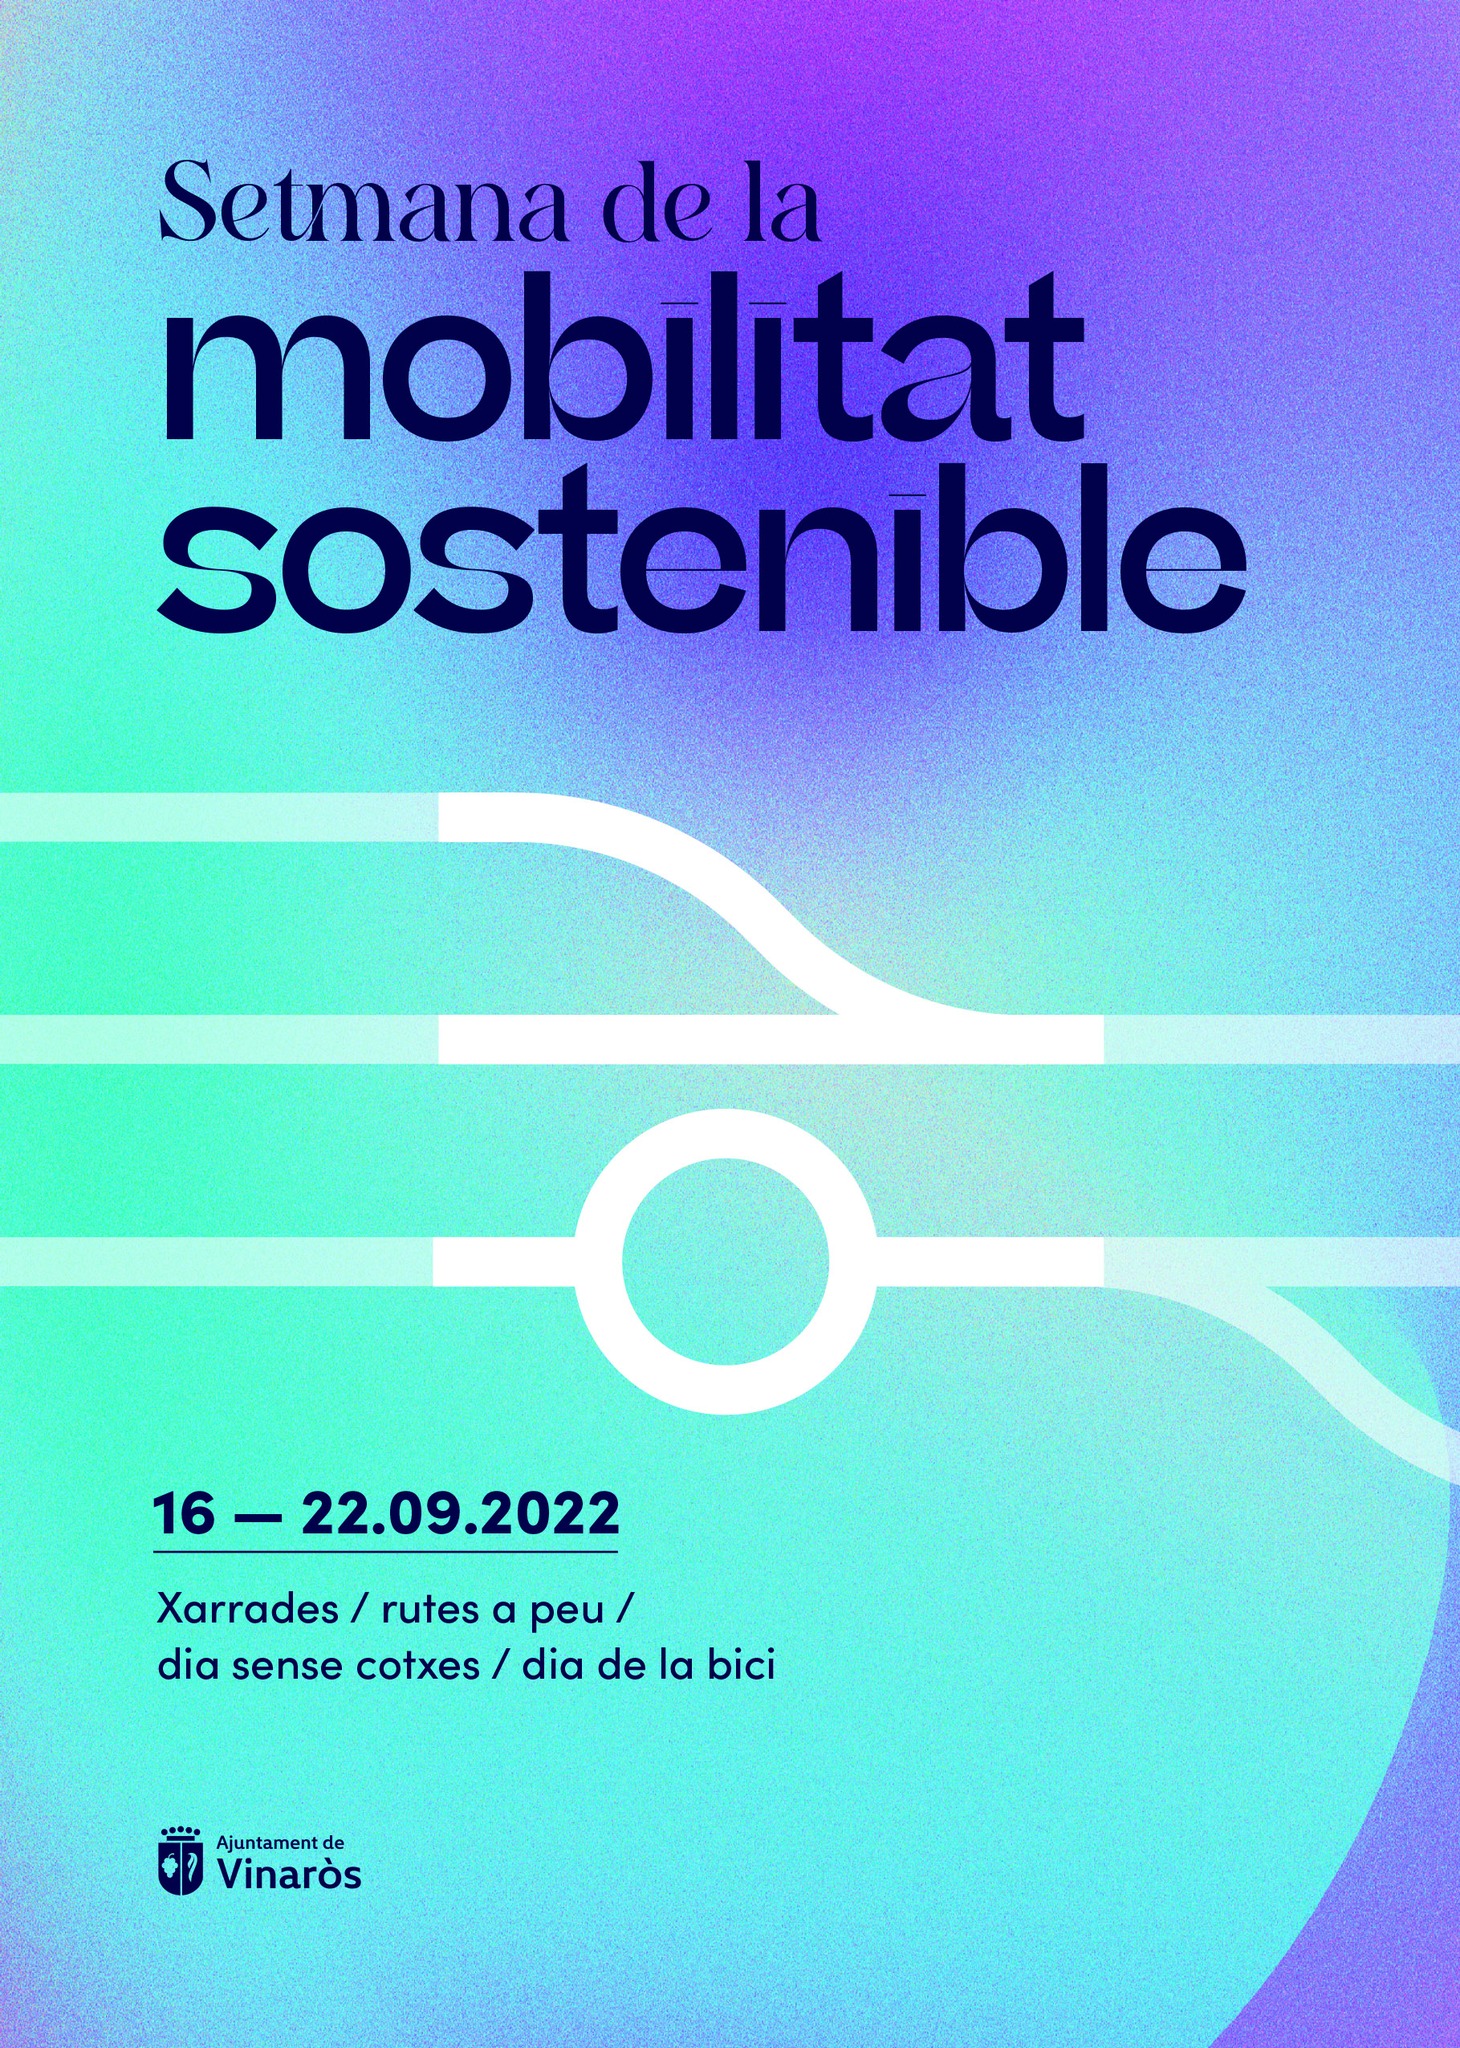 Semana de la movilidad sostenible Vinaròs 2022